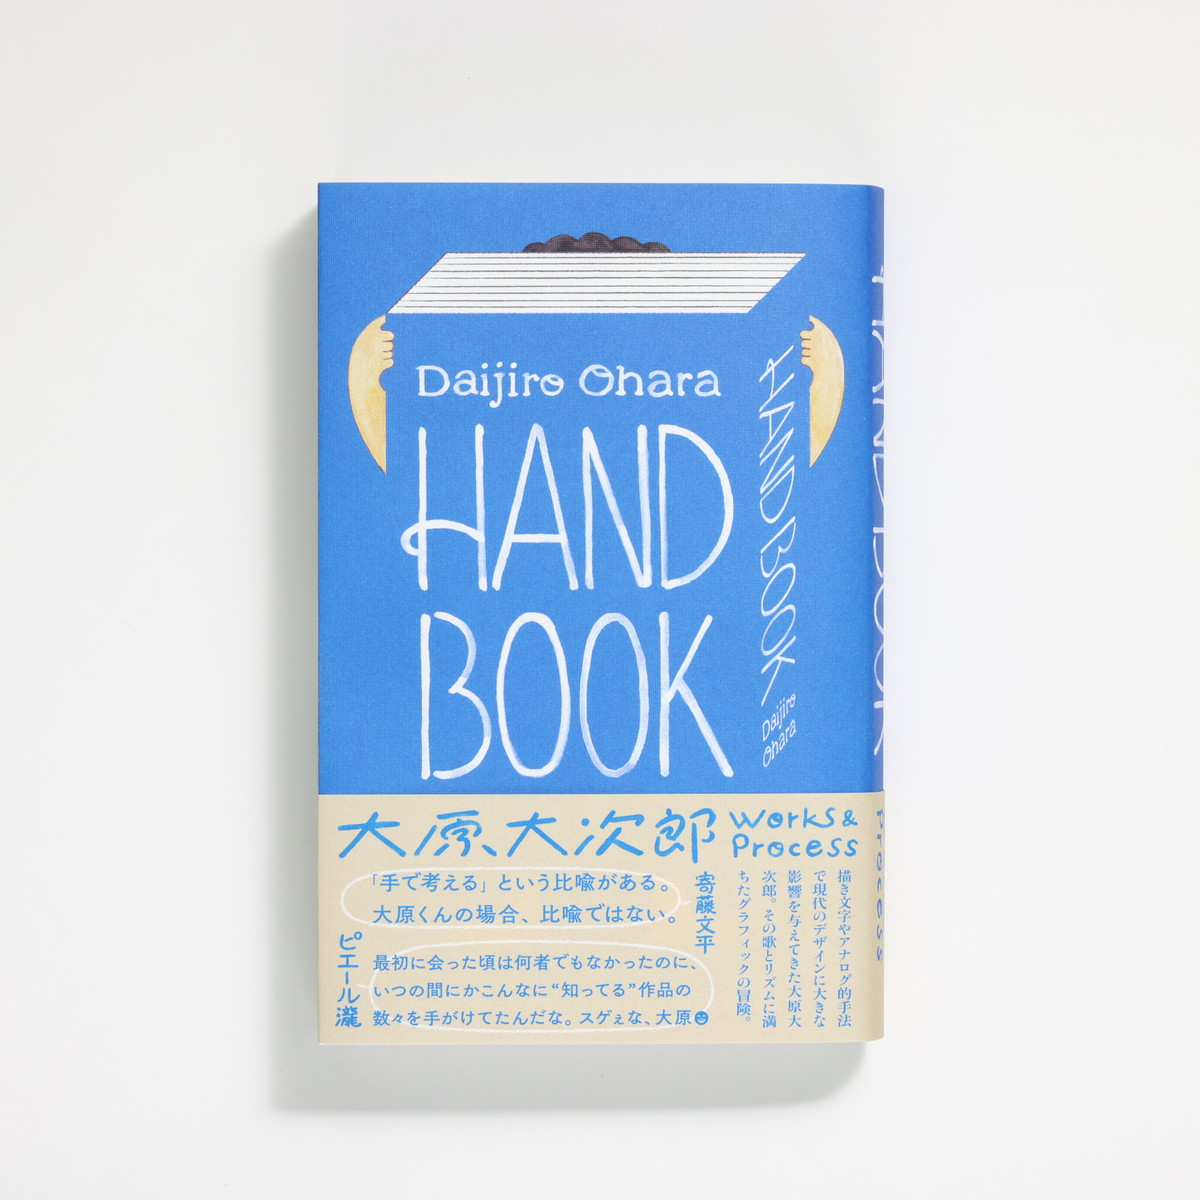 デザイナー大原大次郎の作品集『HAND BOOK　大原大次郎 Works & Process』がグラフィック社より発売